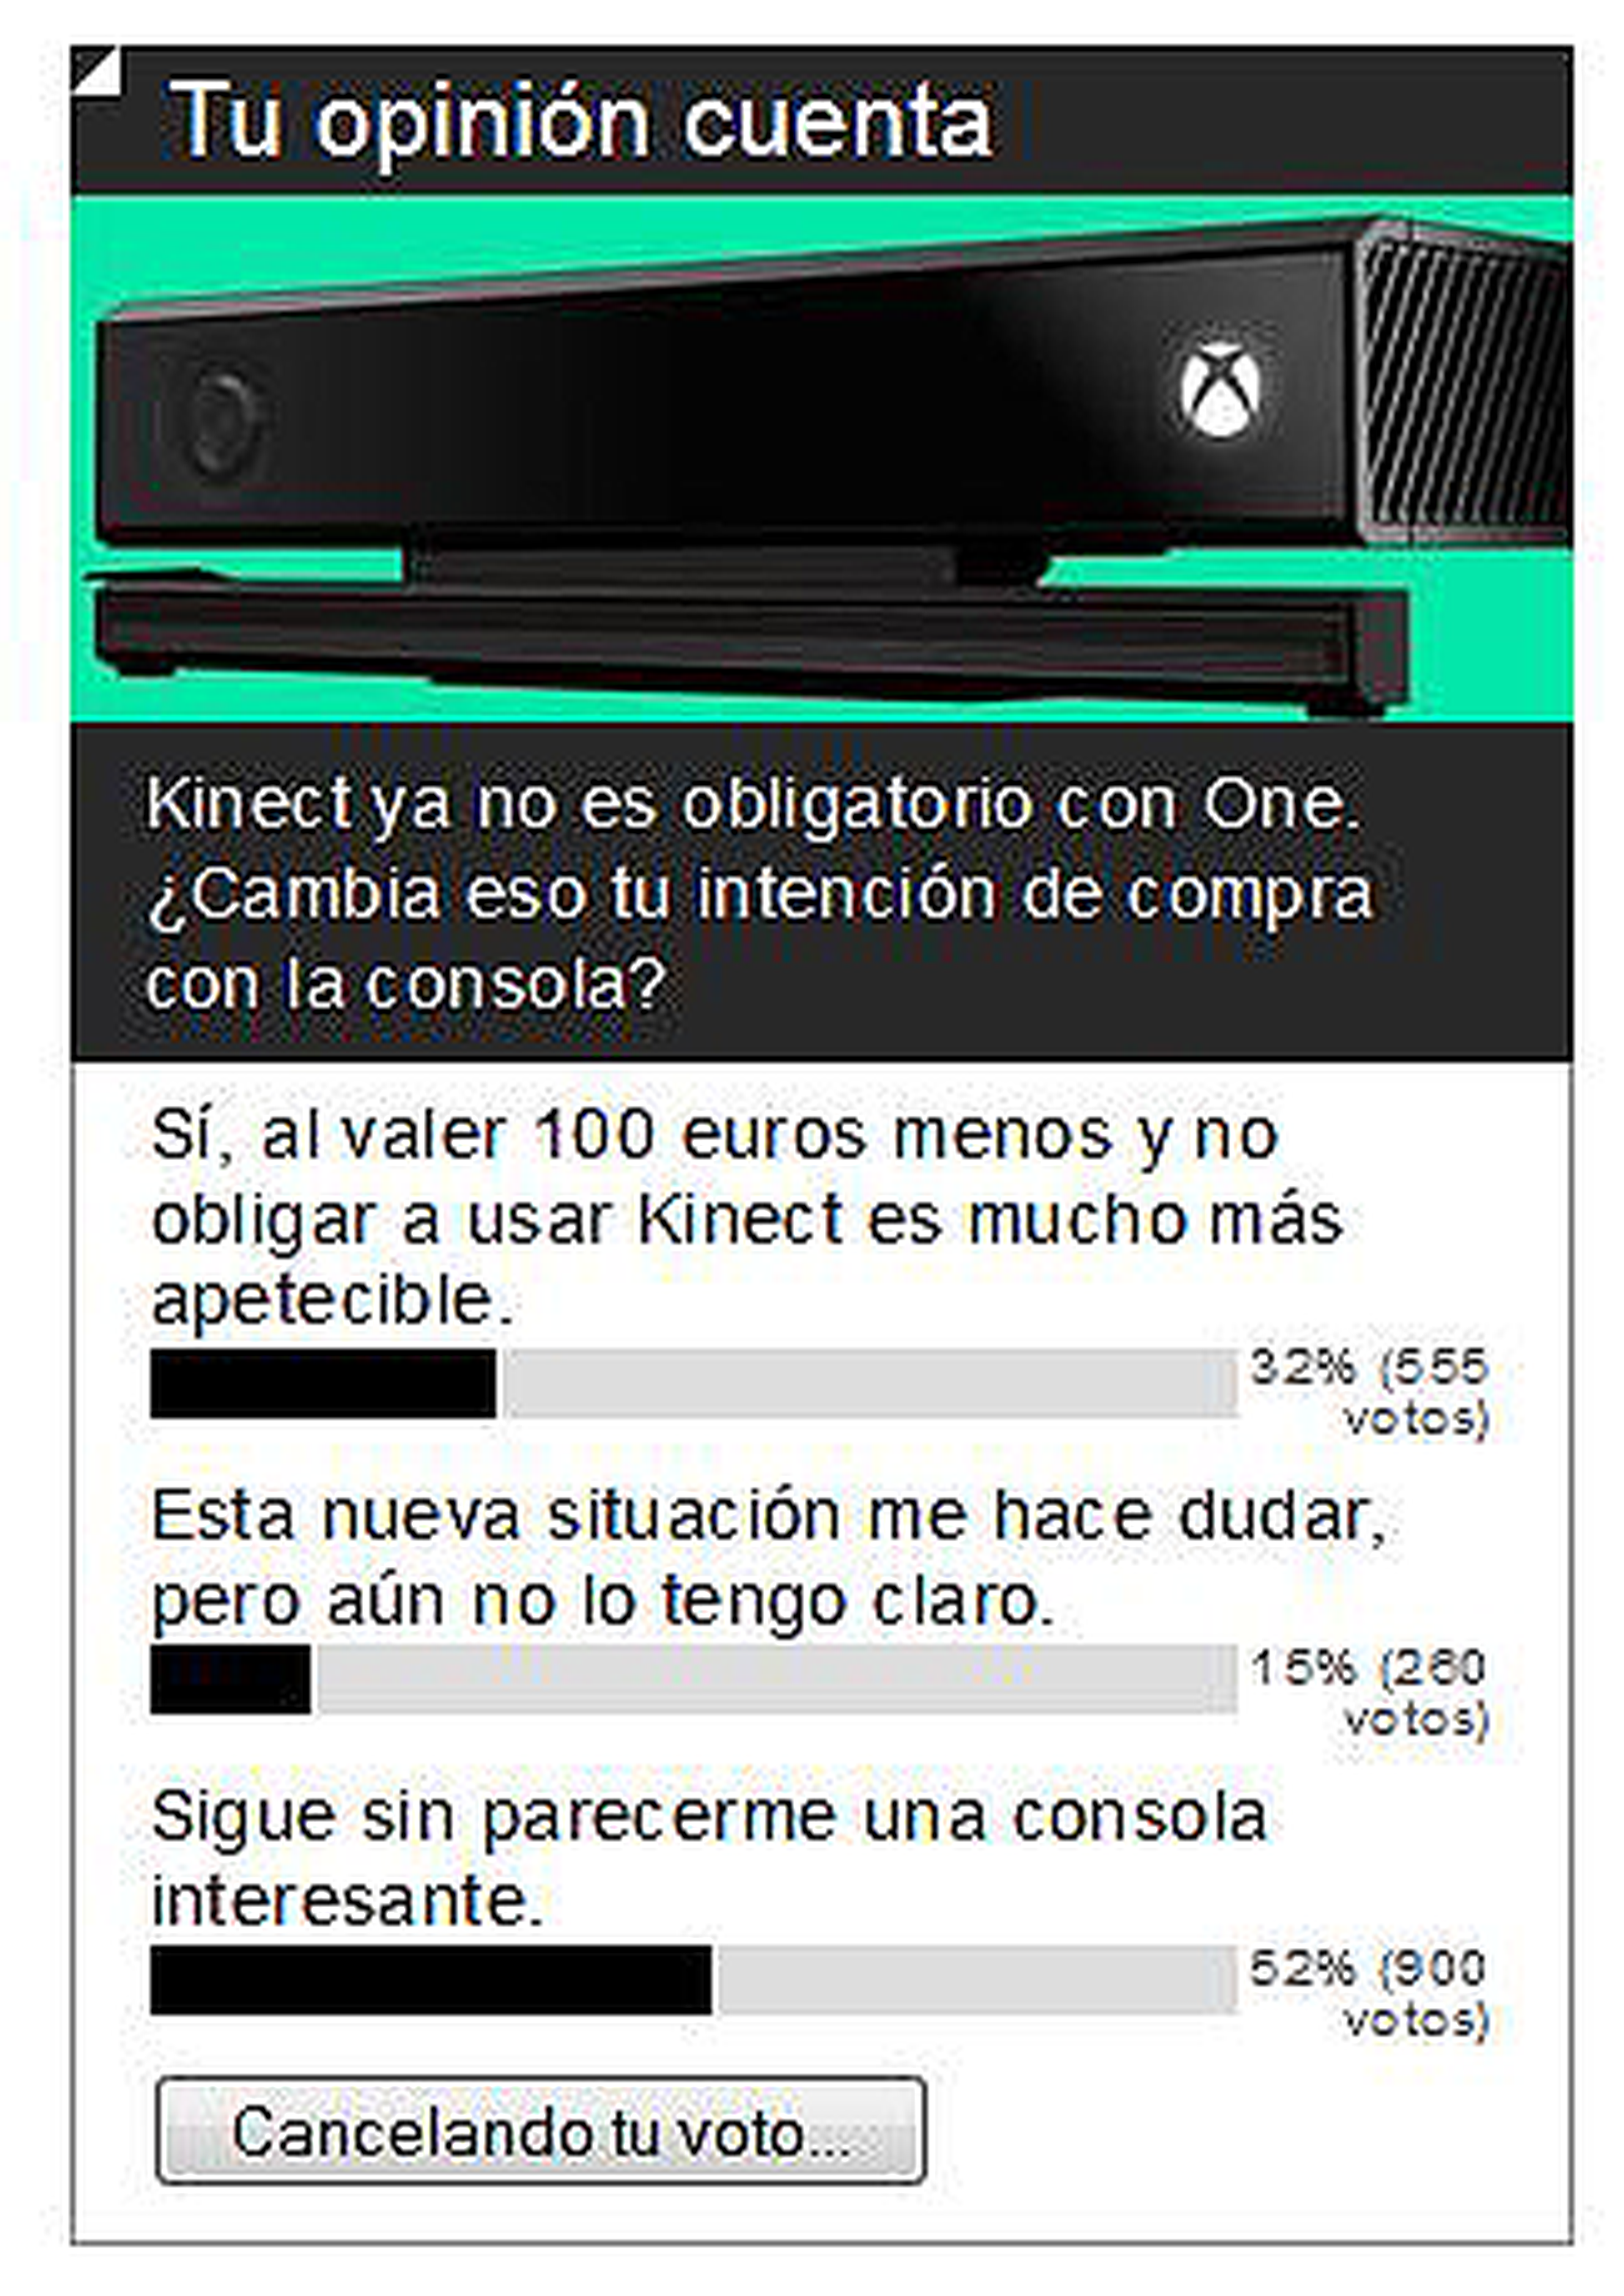 Resultados de encuesta: La rebaja de Xbox One sin Kinect no os ha convencido